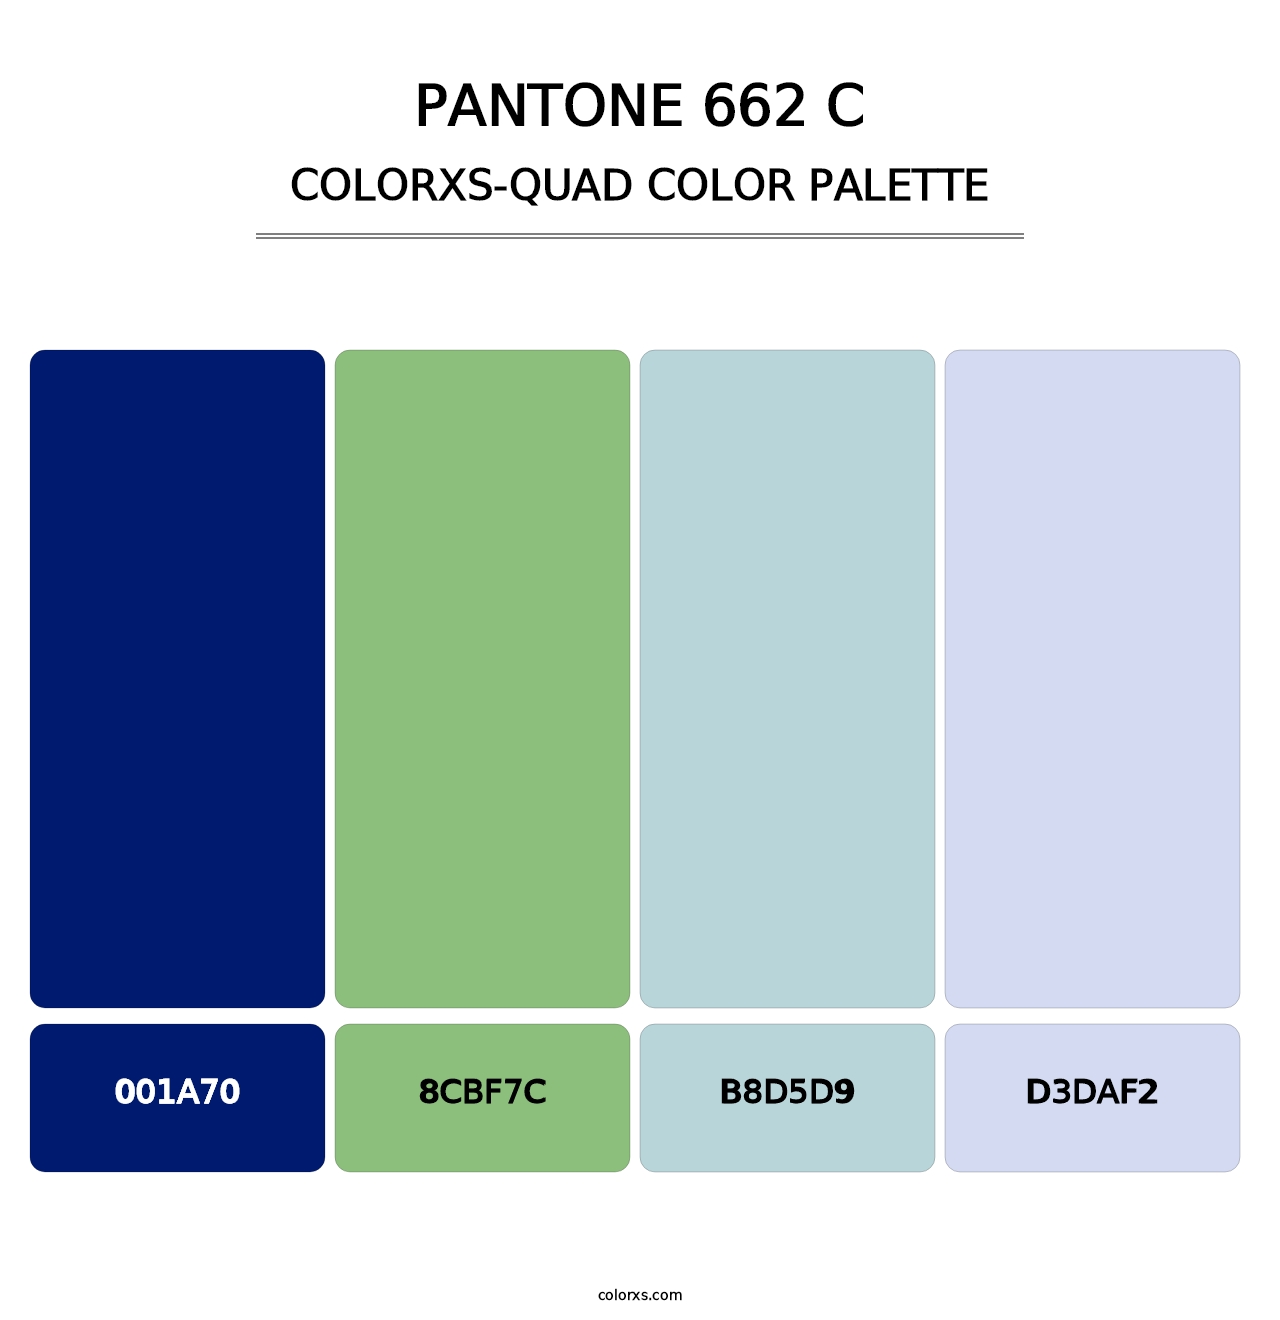 PANTONE 662 C - Colorxs Quad Palette